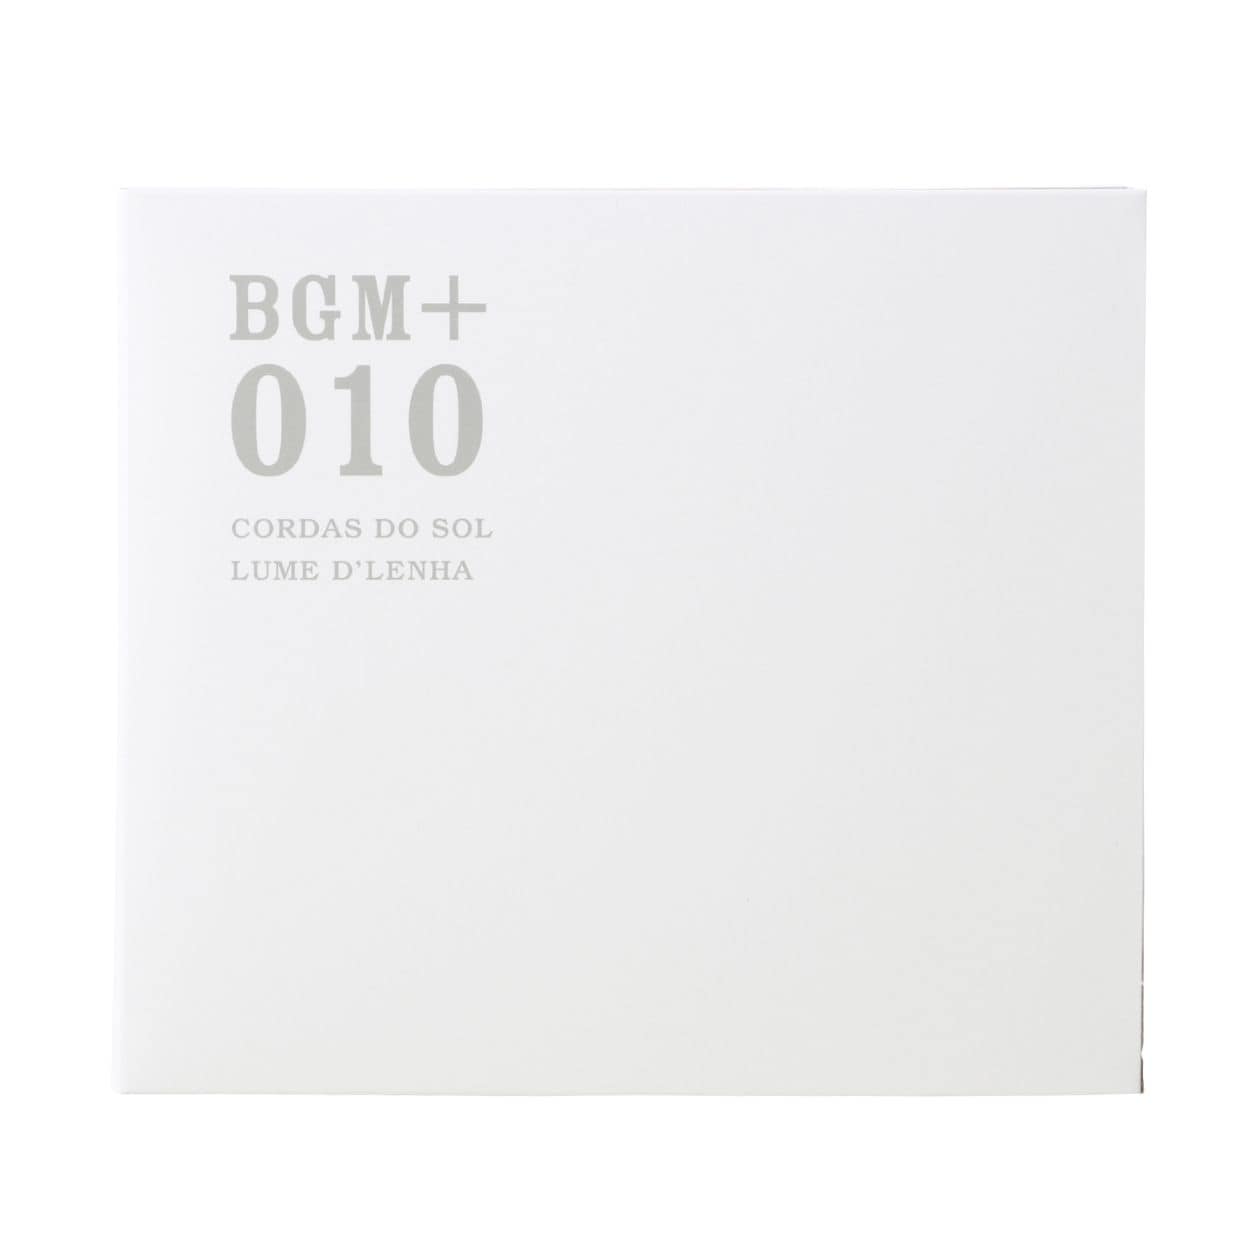 무인양품 일본 CD 음악 BGM +010 CORDAS DO 솔